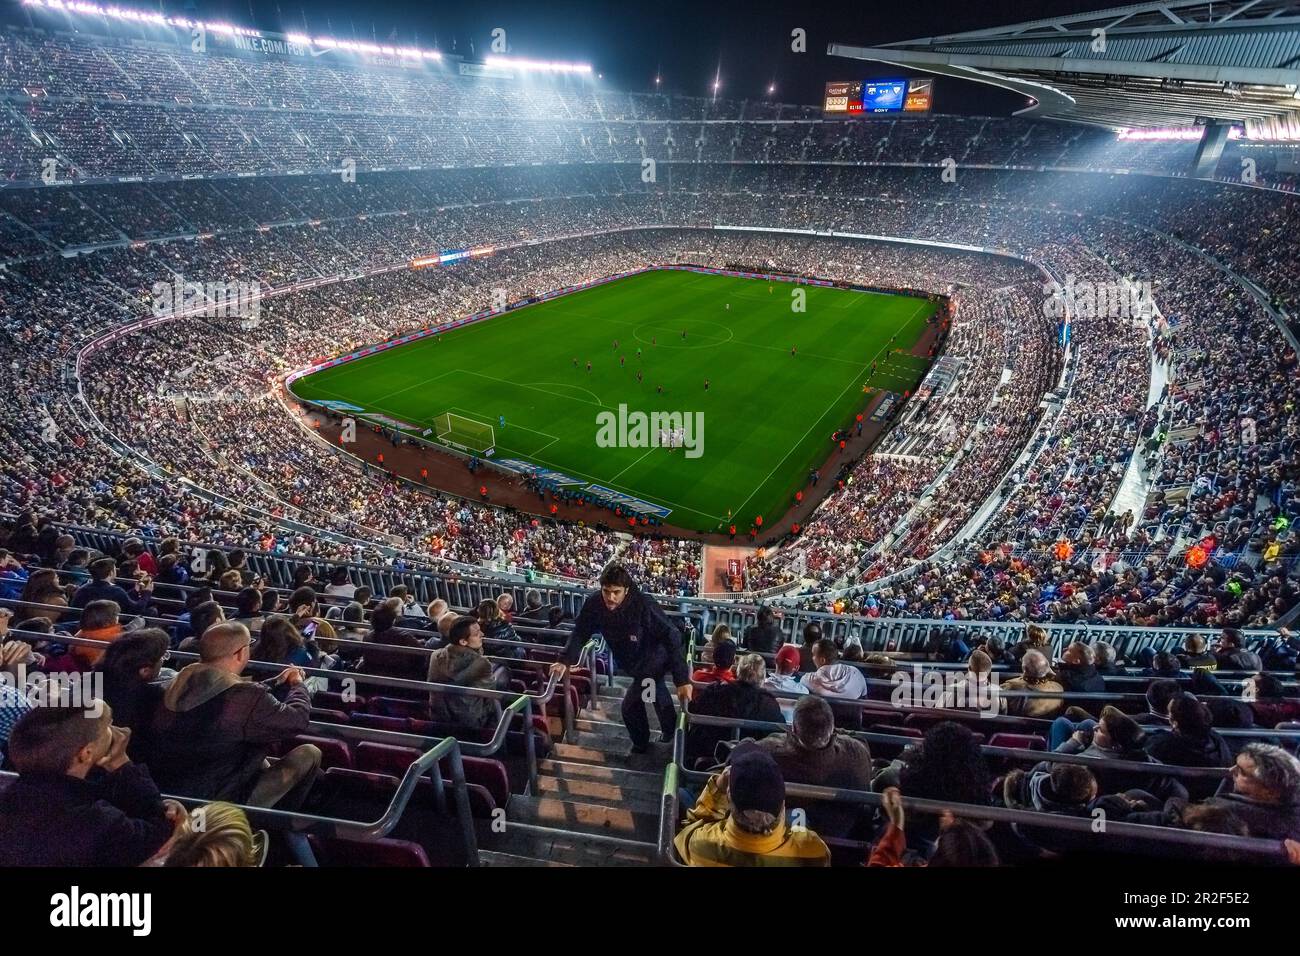 FC Barcelona home game at Estadio Nou Camp in Barcelona, Spain Stock Photo